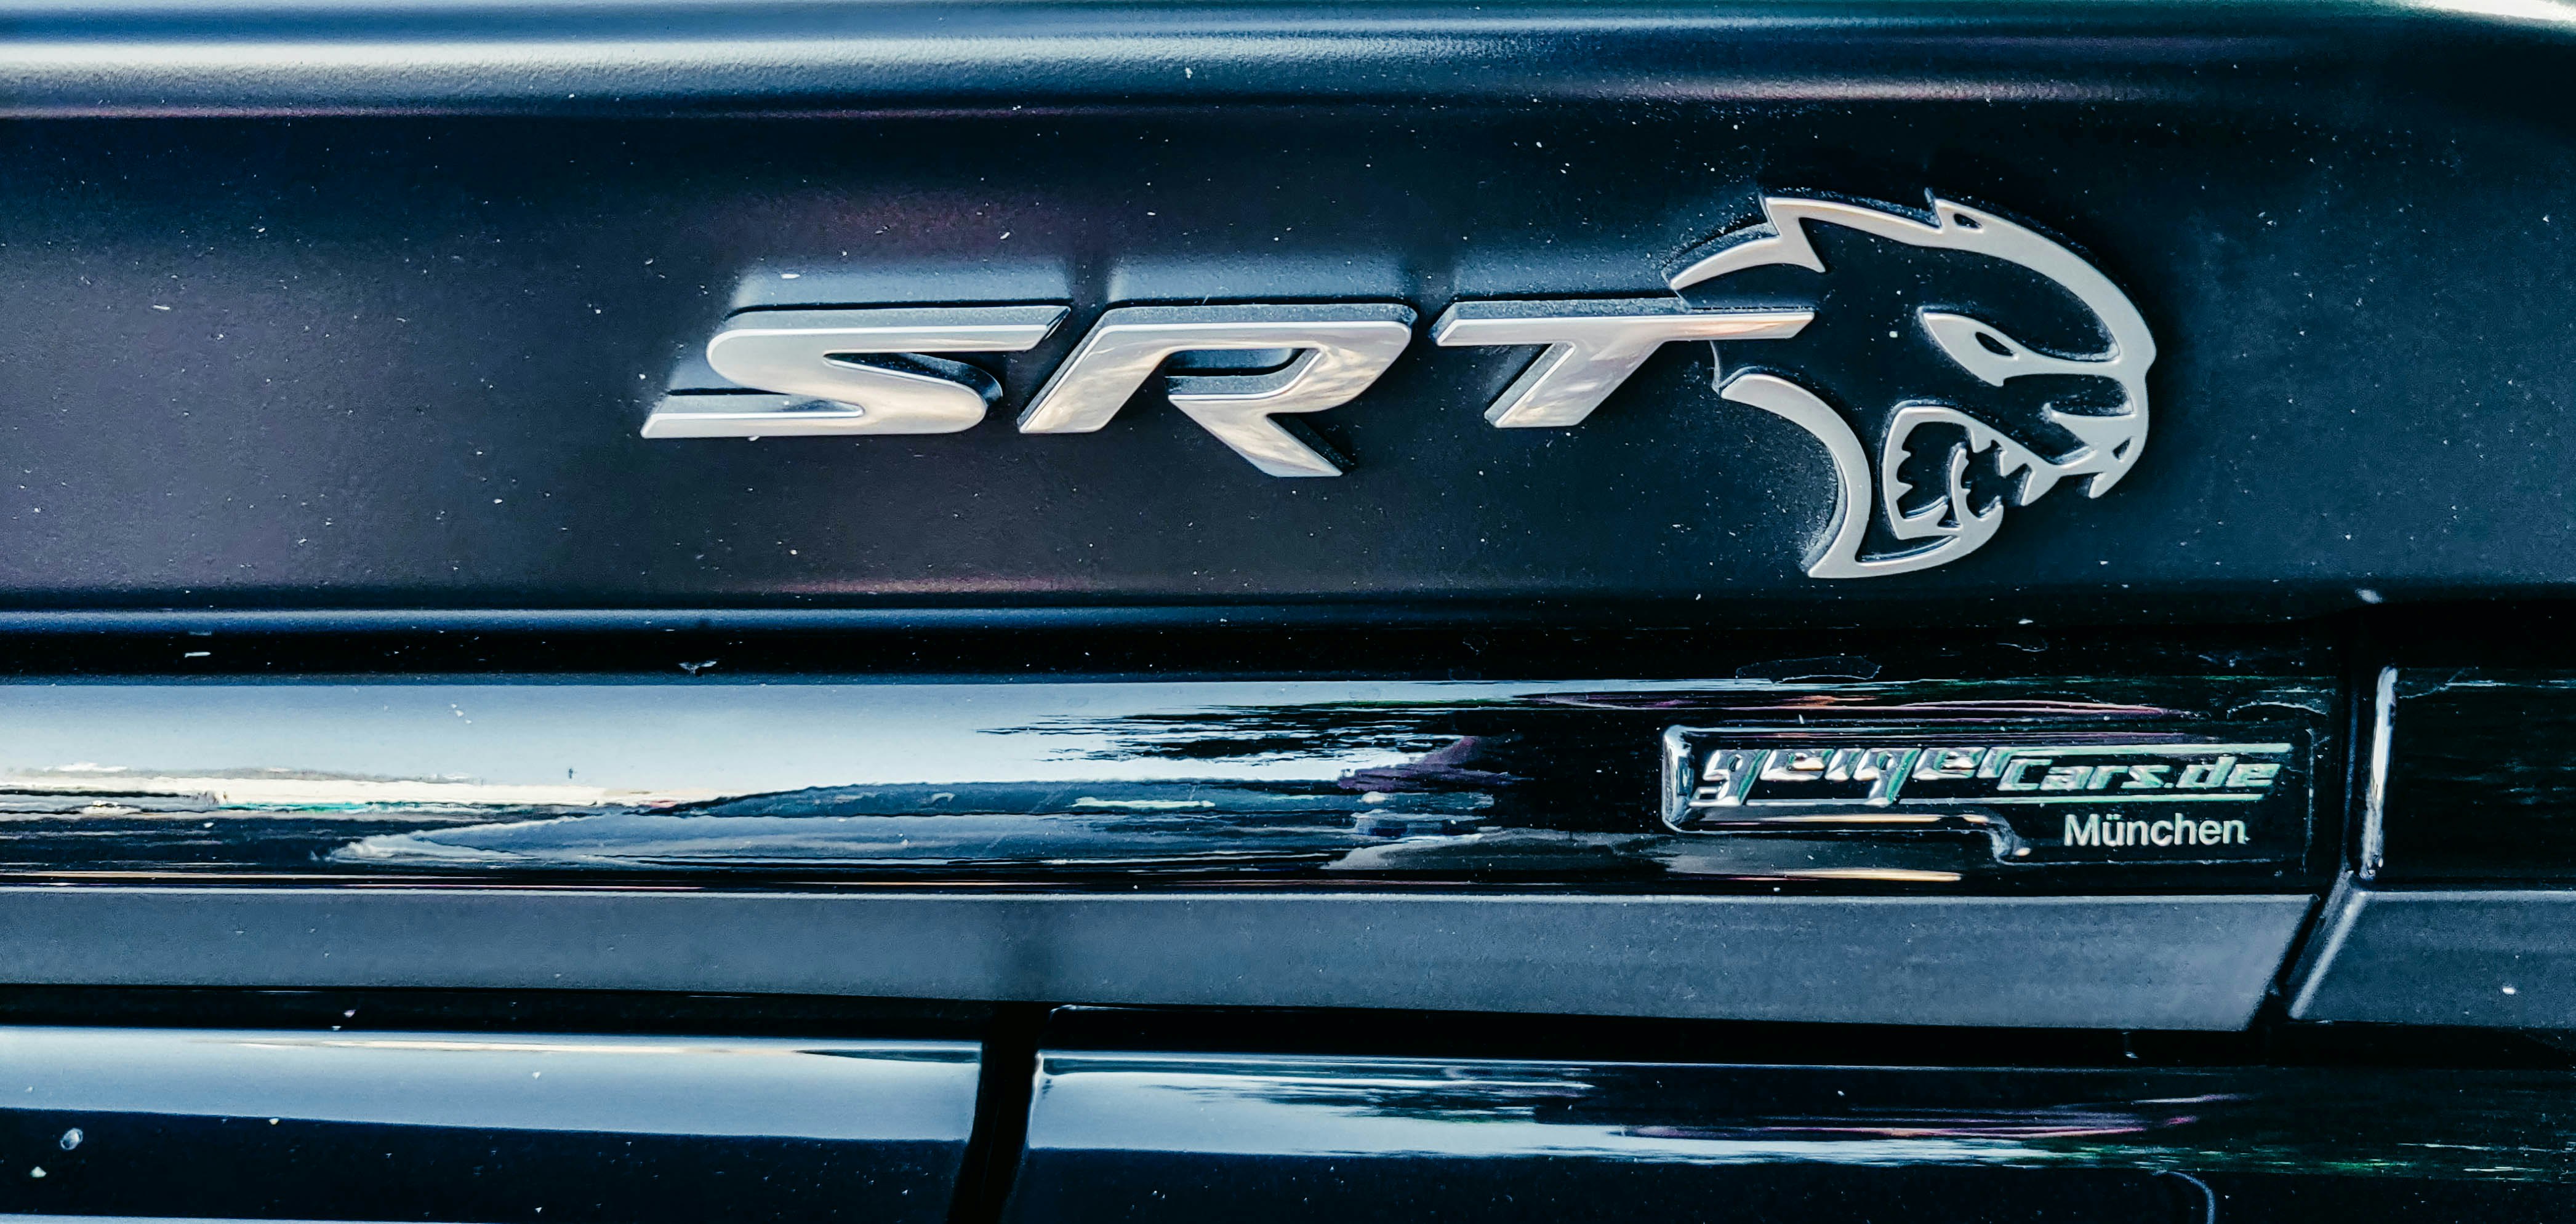 SRT emblem on vehicle